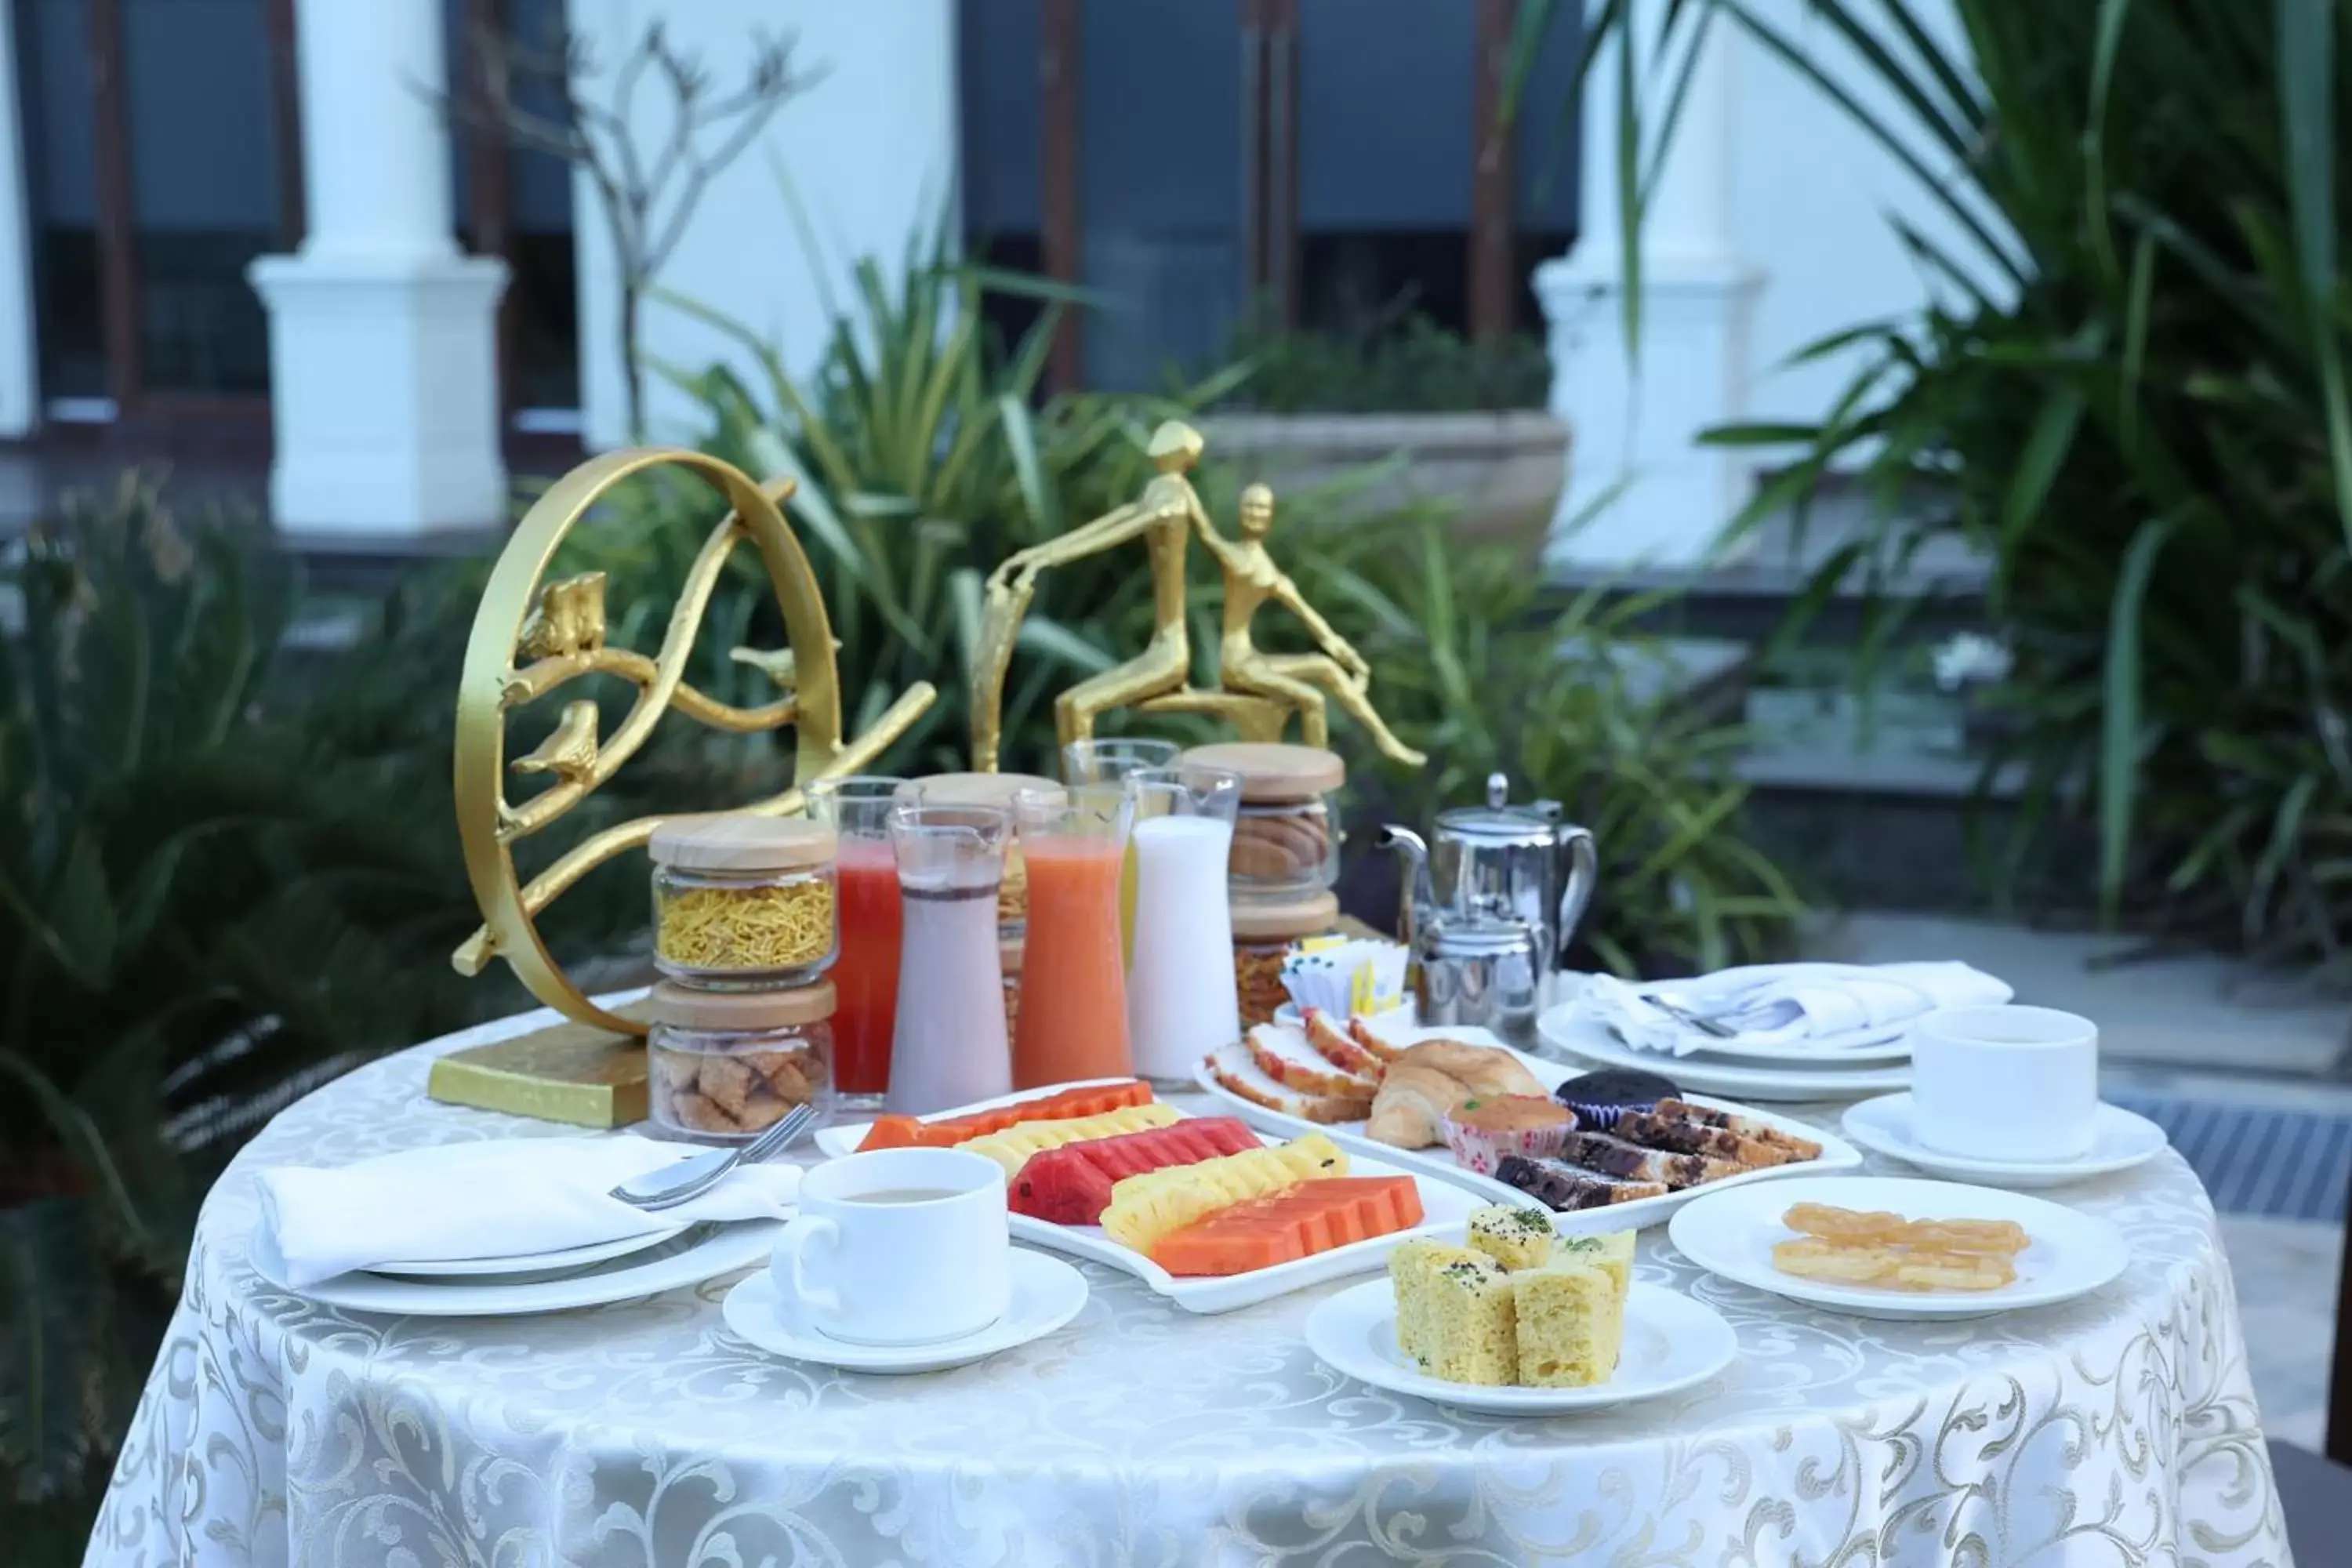 Breakfast in The Fern Sattva Resort, Dwarka